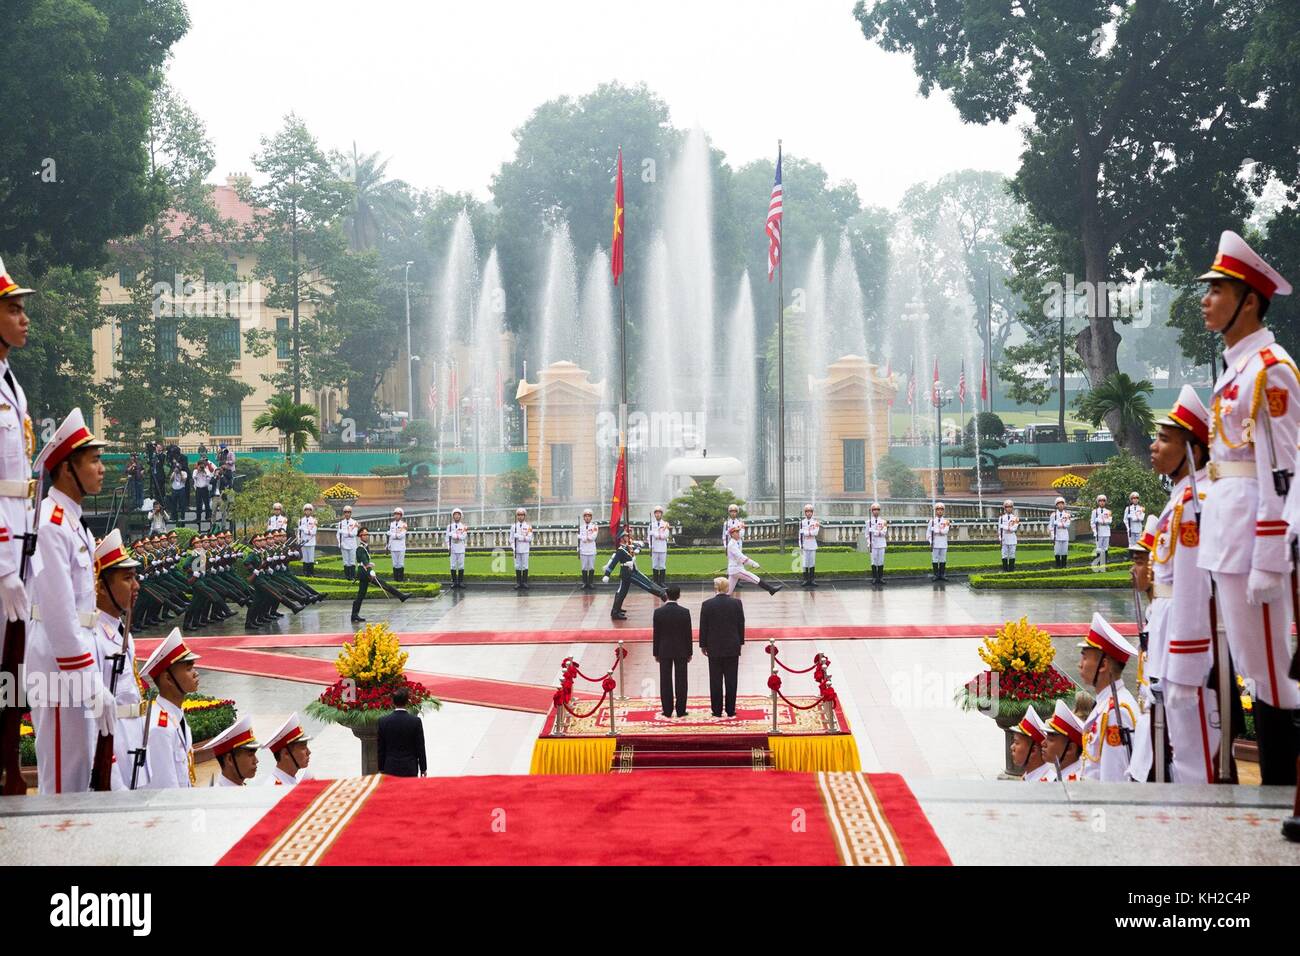 Le président américain Donald Trump, droite, commentaires de la garde d'honneur aux côtés du président vietnamien tran dai Quang, gauche, au cours de la cérémonie d'arrivée officielle pour la visite d'État à la suite du sommet de l'apec le 11 novembre 2017 à Hanoi, Vietnam. Banque D'Images